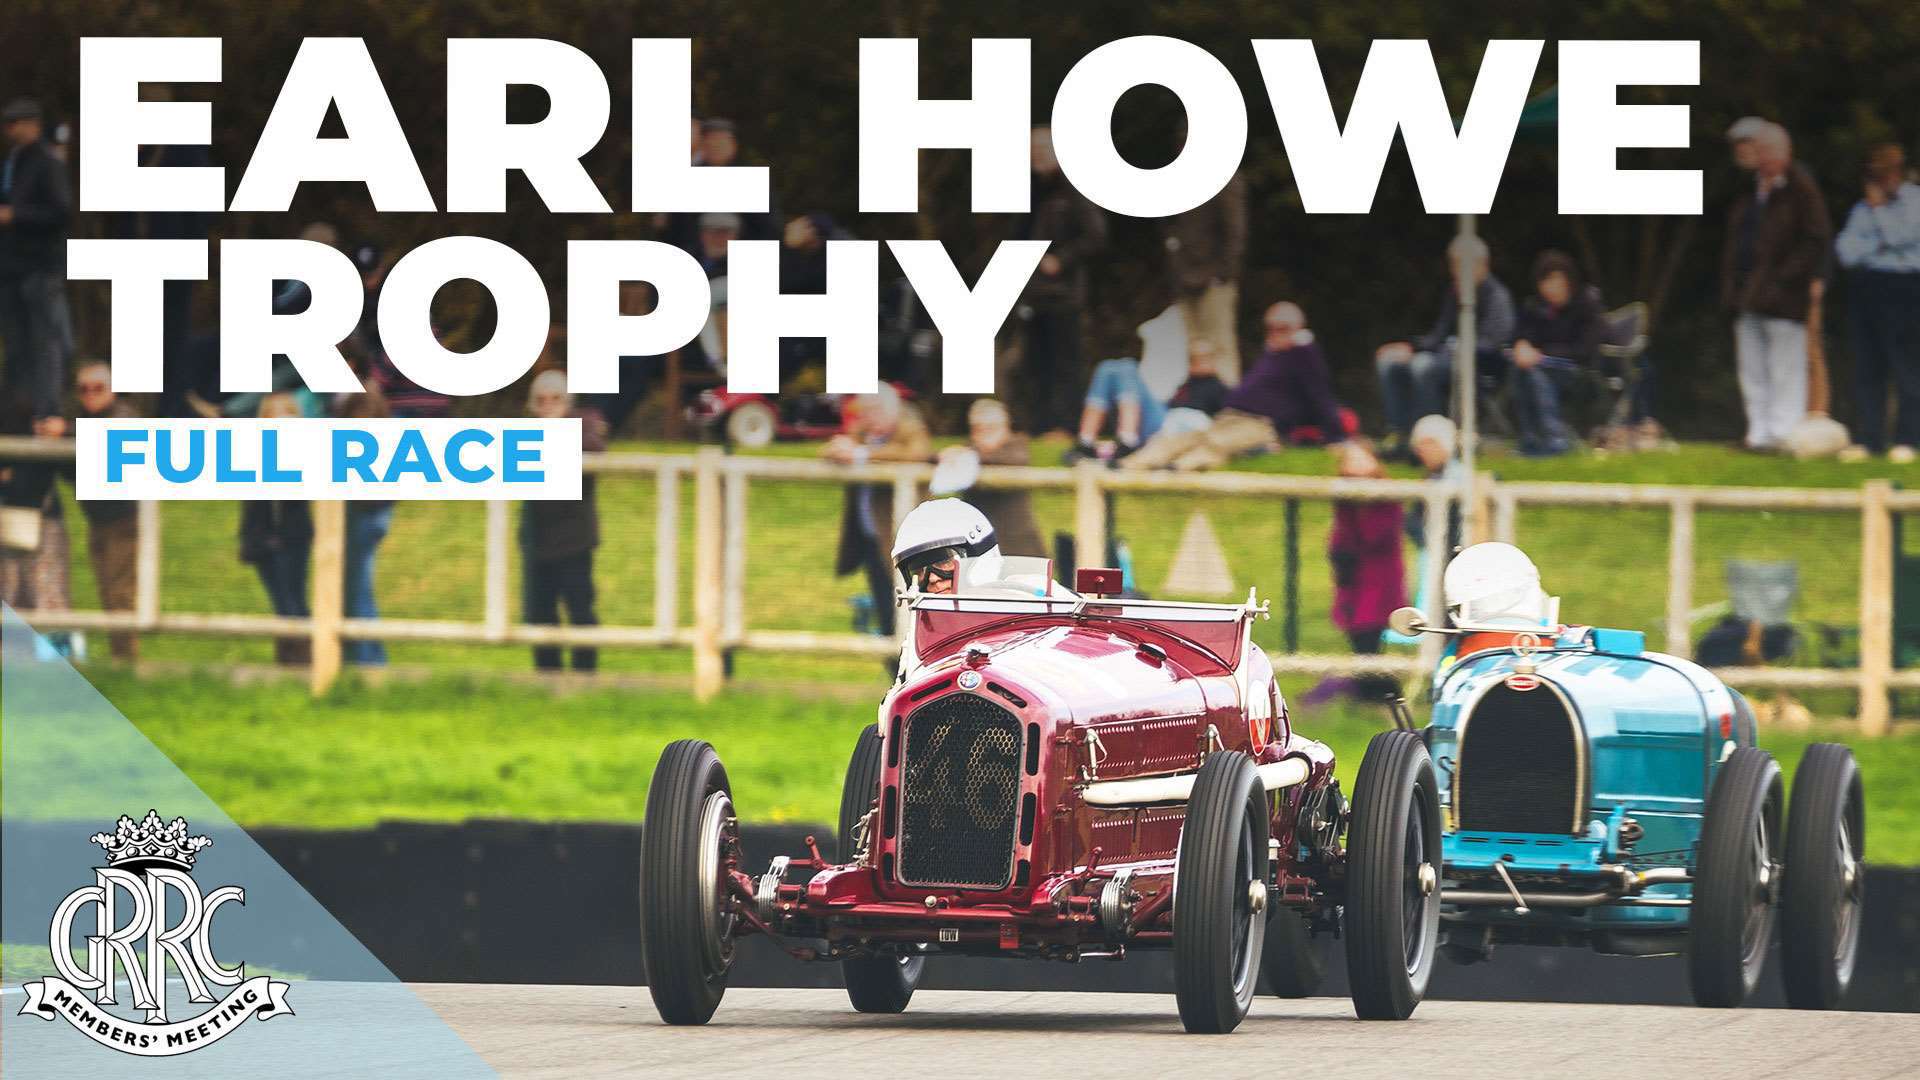 race-9-earl-howe-trophy-full-race-78mm-joe-harding-goodwood-19102021.jpg